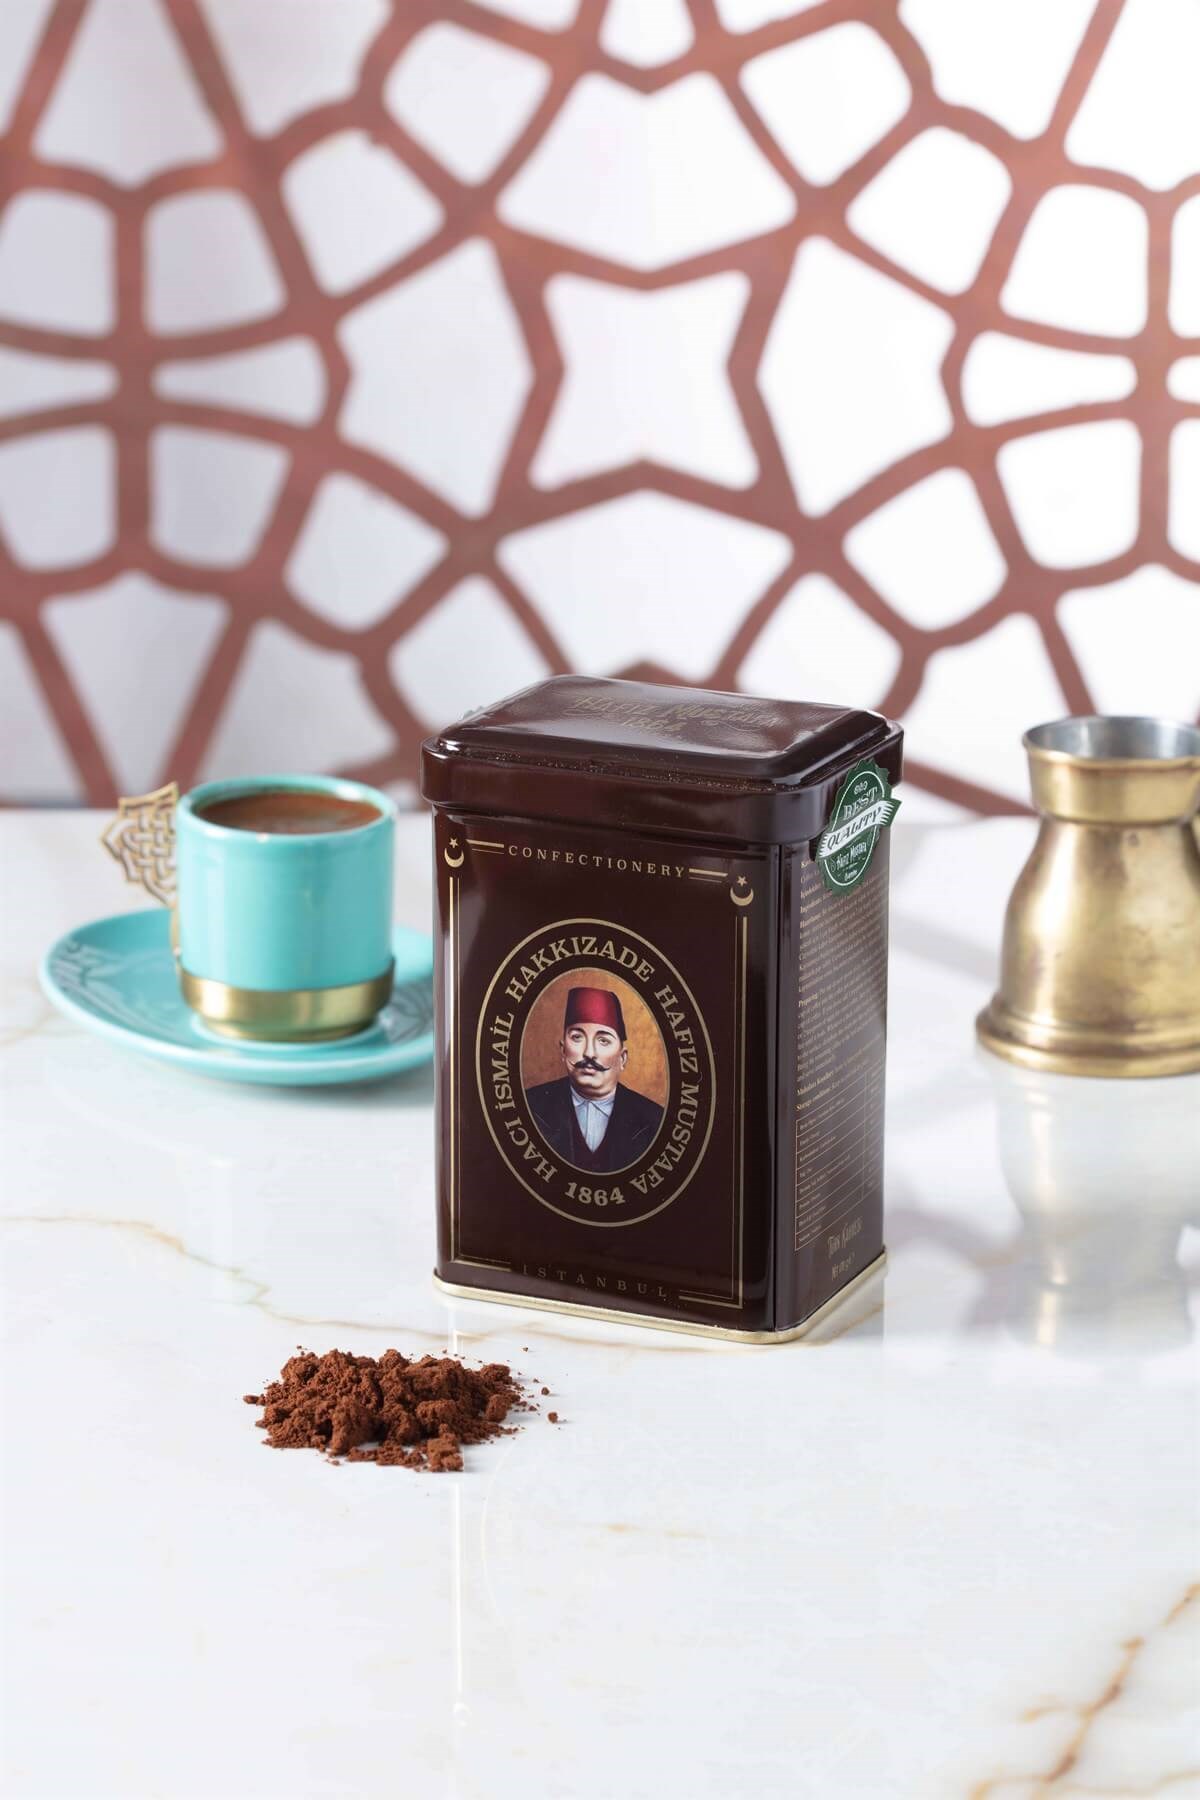 منتج تركي: قهوة بعبق التاريخ من حافظ مصطفى 170 غ